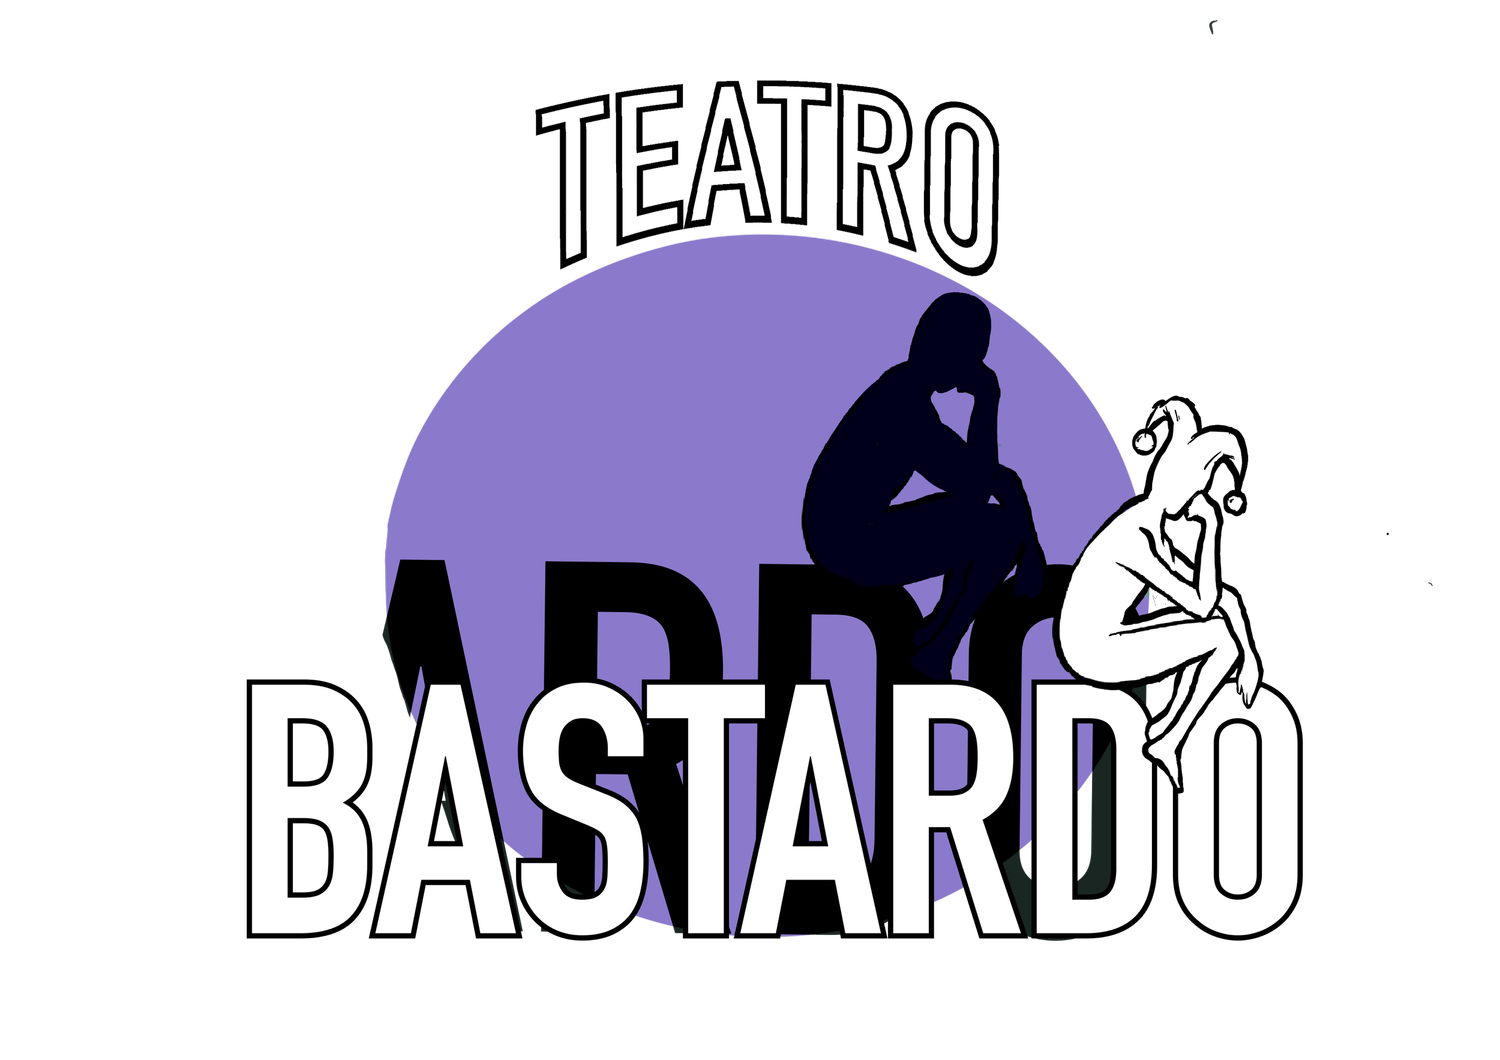 TEATRO BASTARDO